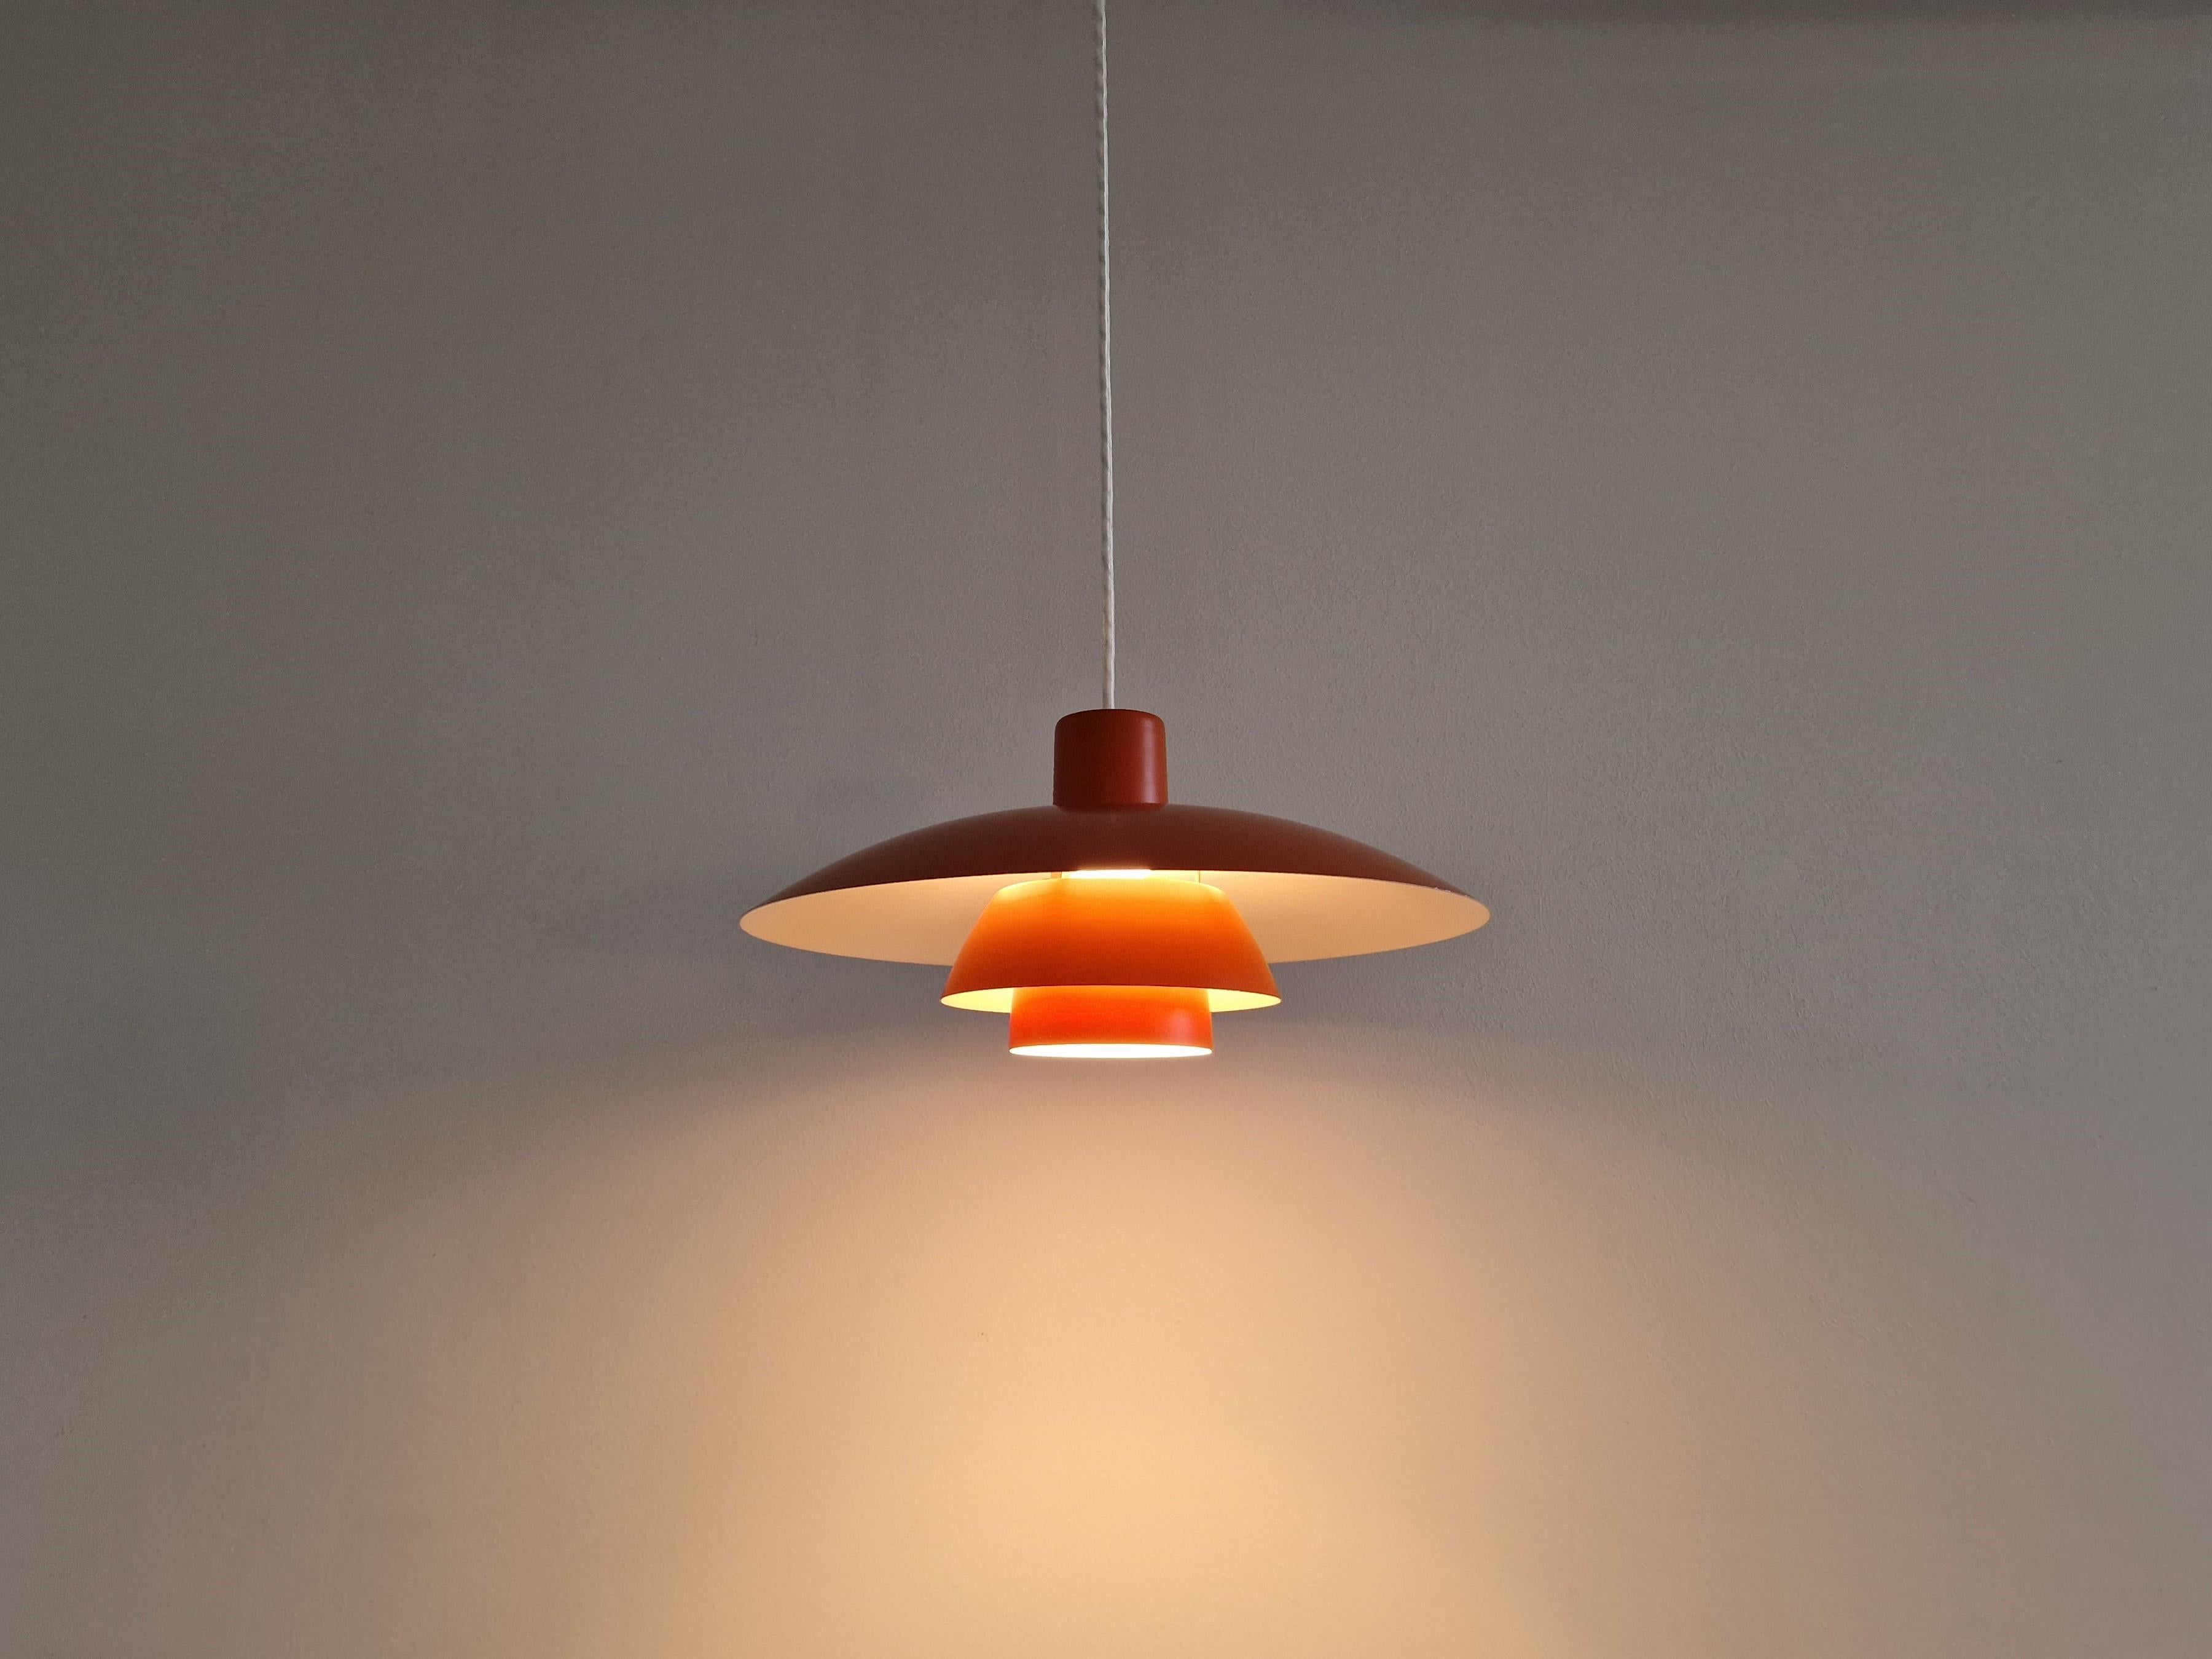 Mid-20th Century Red PH 4/3 Pendant Lamp by Poul Henningsen for Louis Poulsen, Denmark 1960's